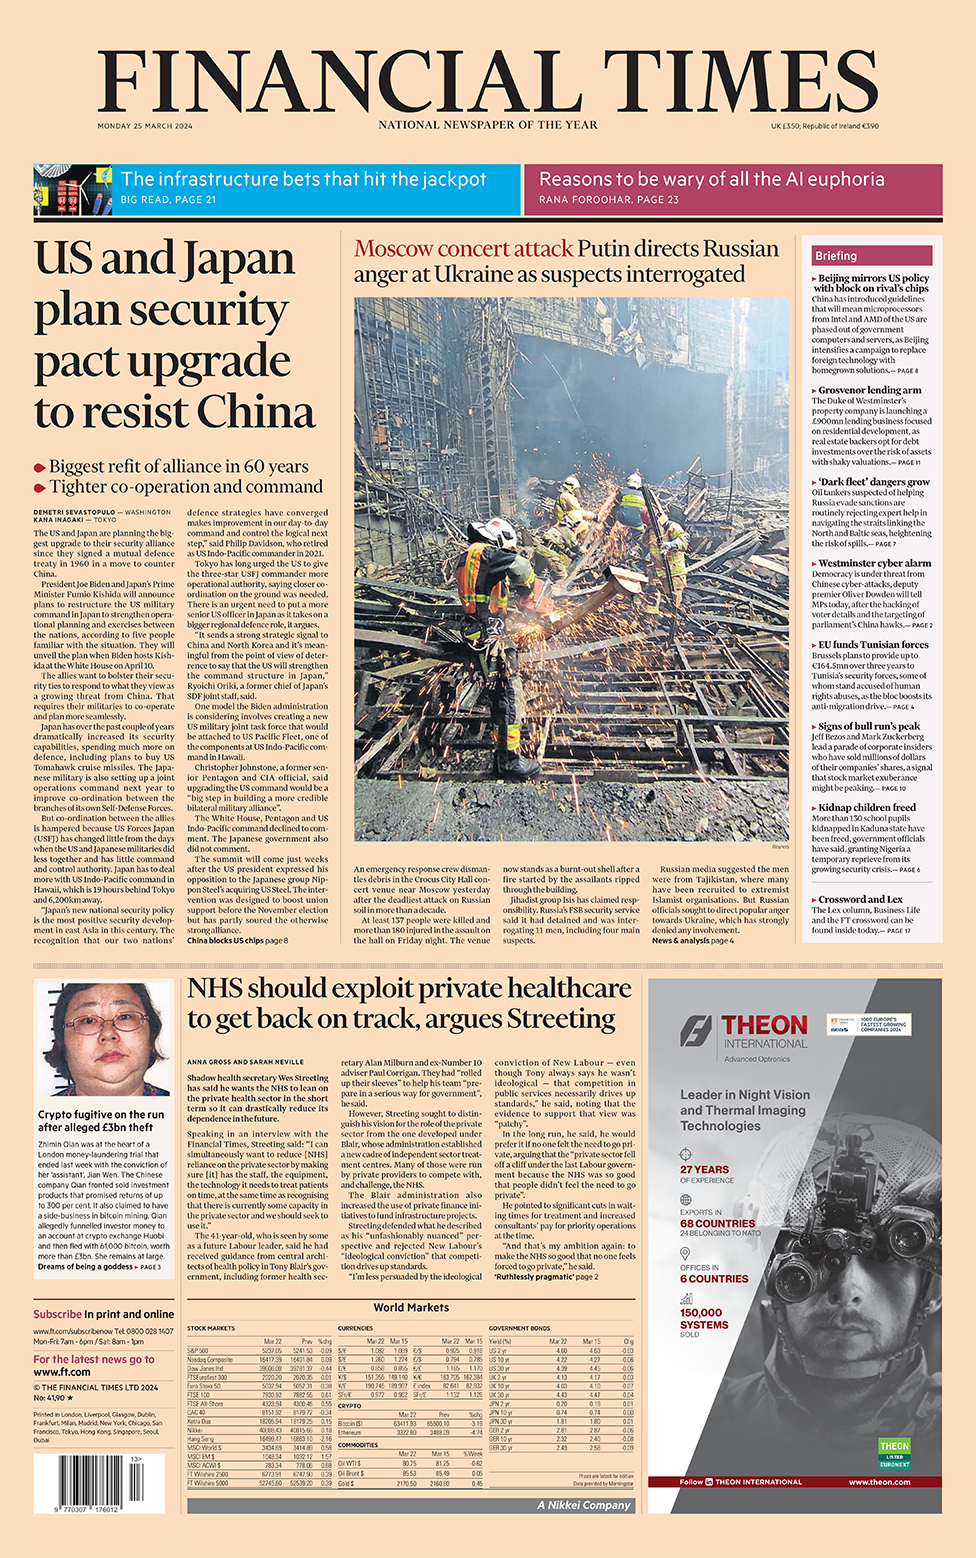 英国《金融时报》头版的主要标题是： "美日计划升级安保条约以对抗中国"